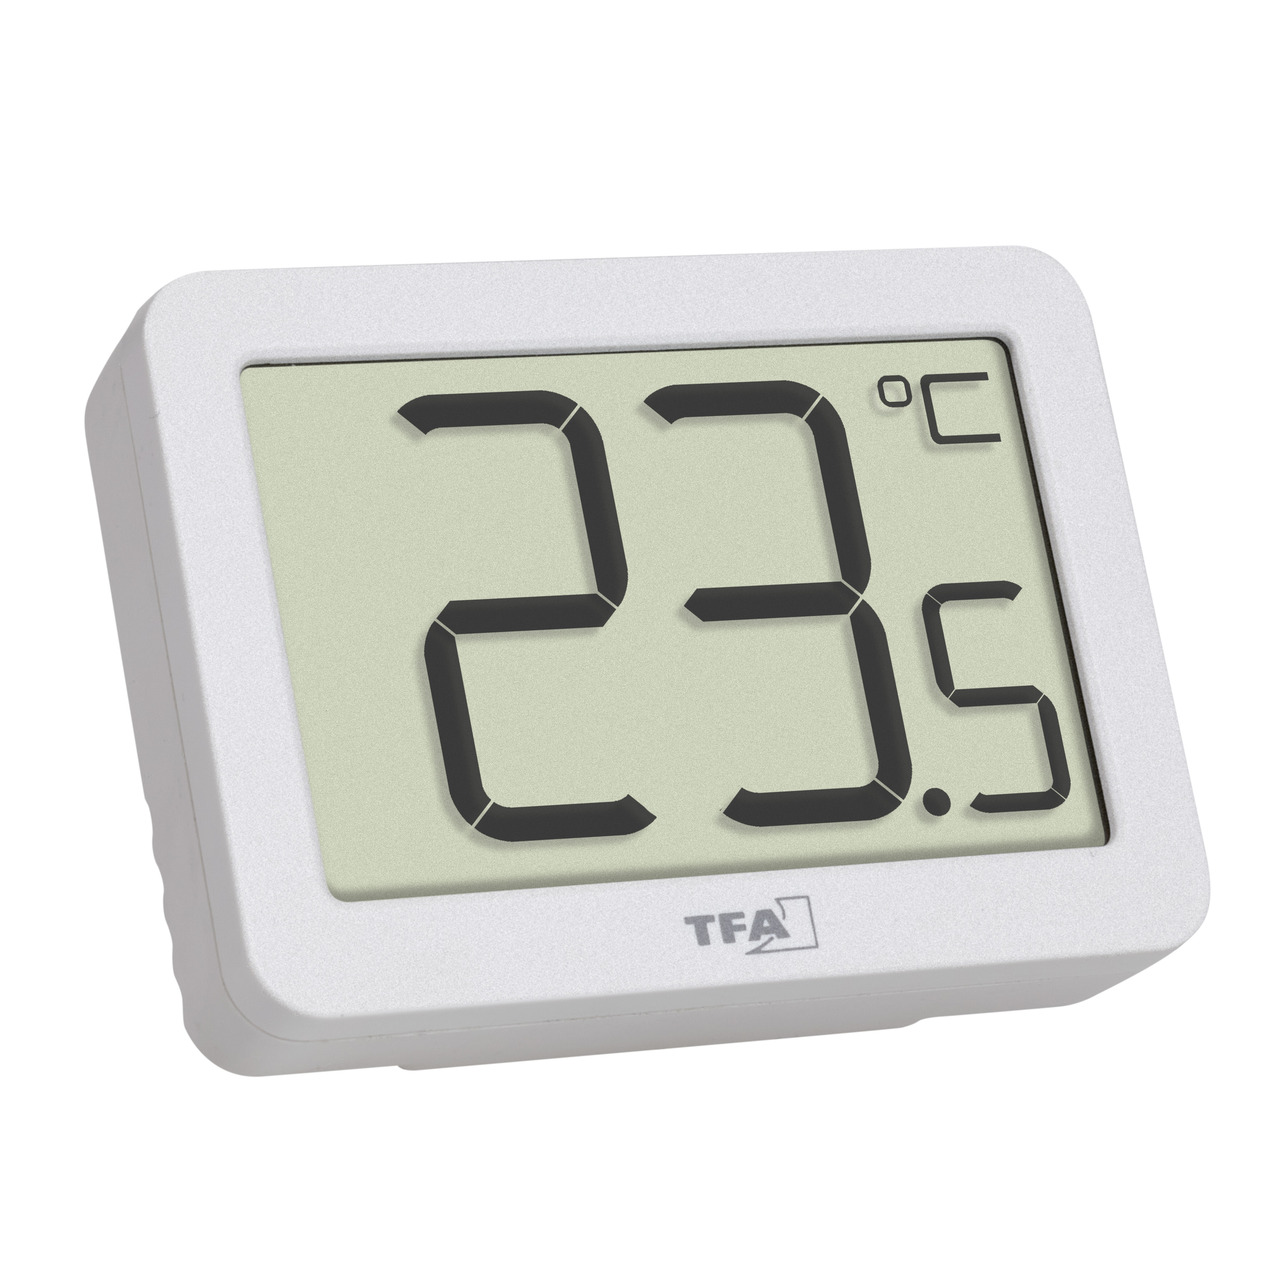 TFA Digitales Thermometer für Raumtemperatur-Erfassung- Magnetmontage- kompakt- weiss